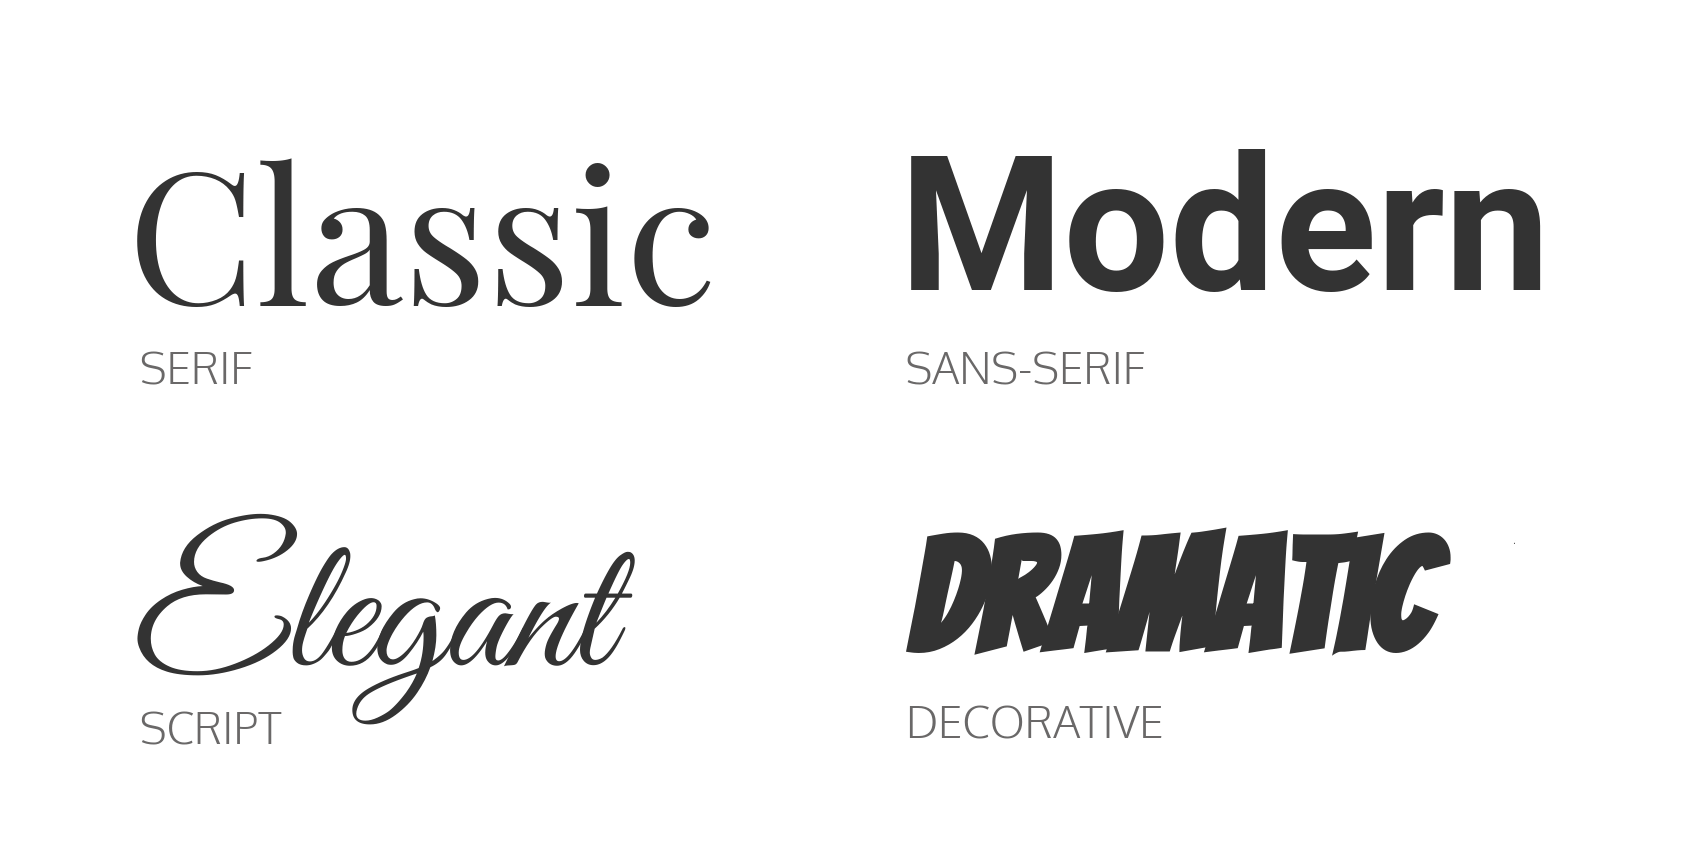 Four main font families